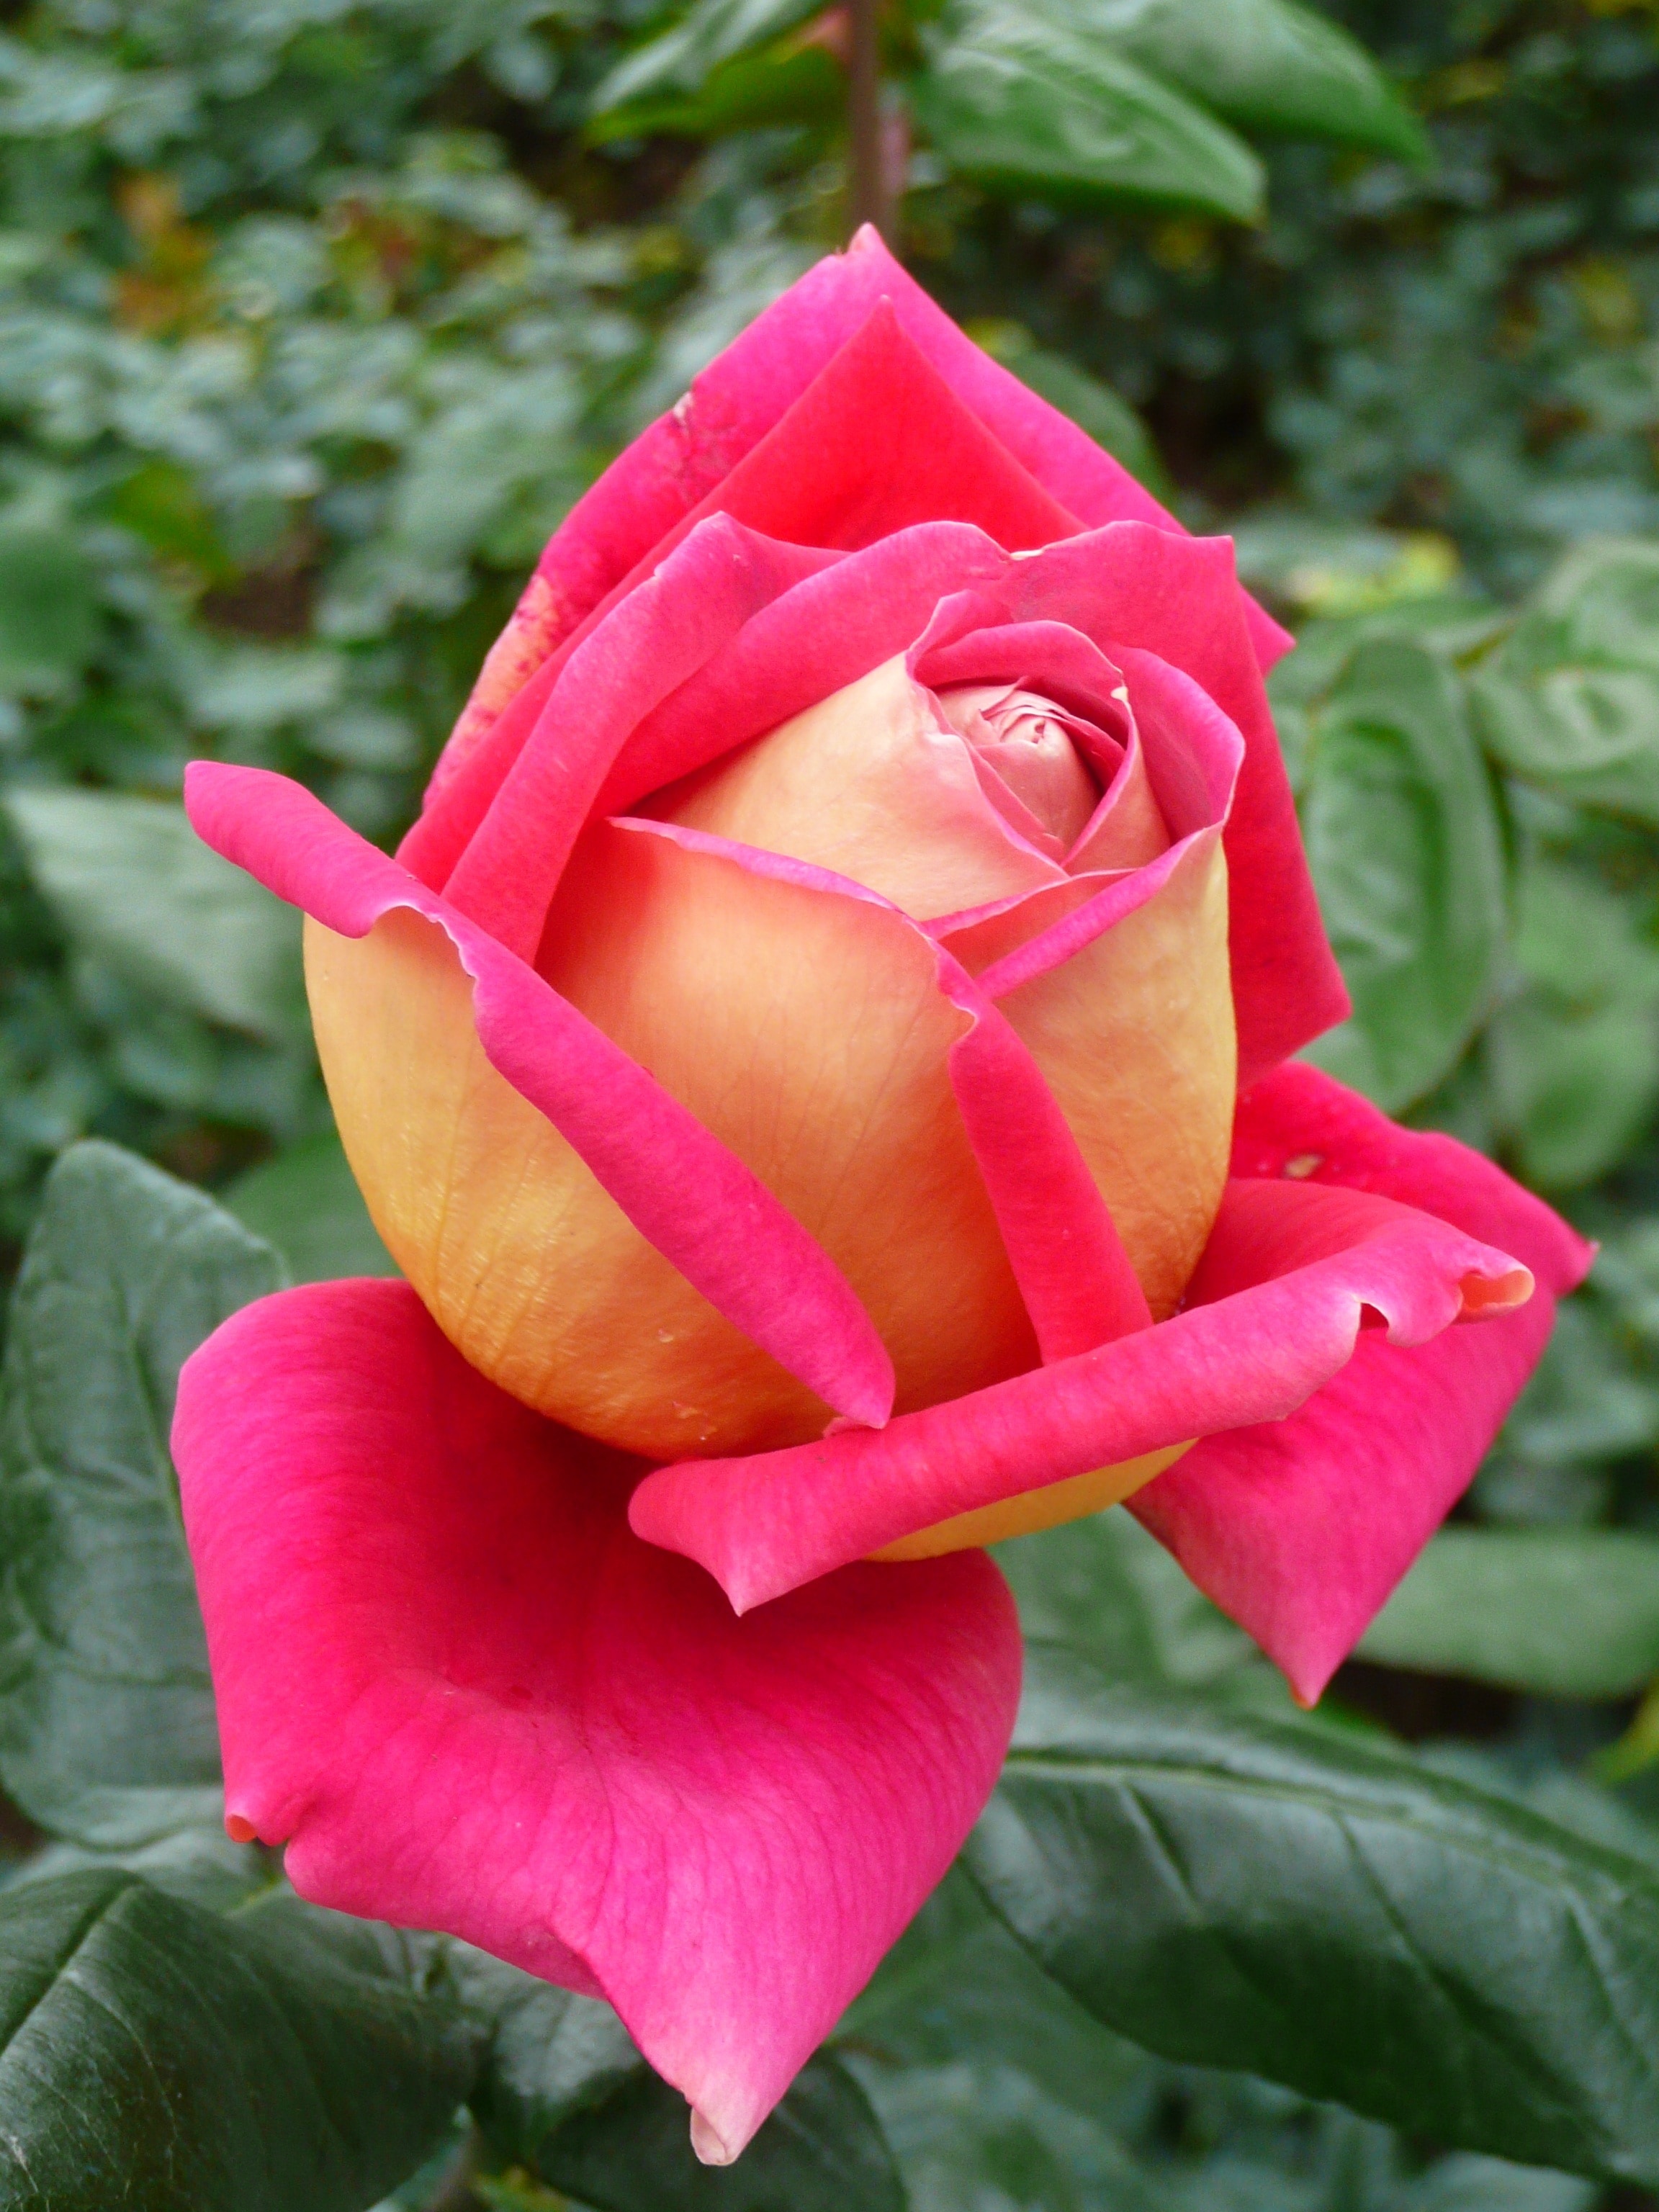 Rose, Flower, Natural, pink color, flower